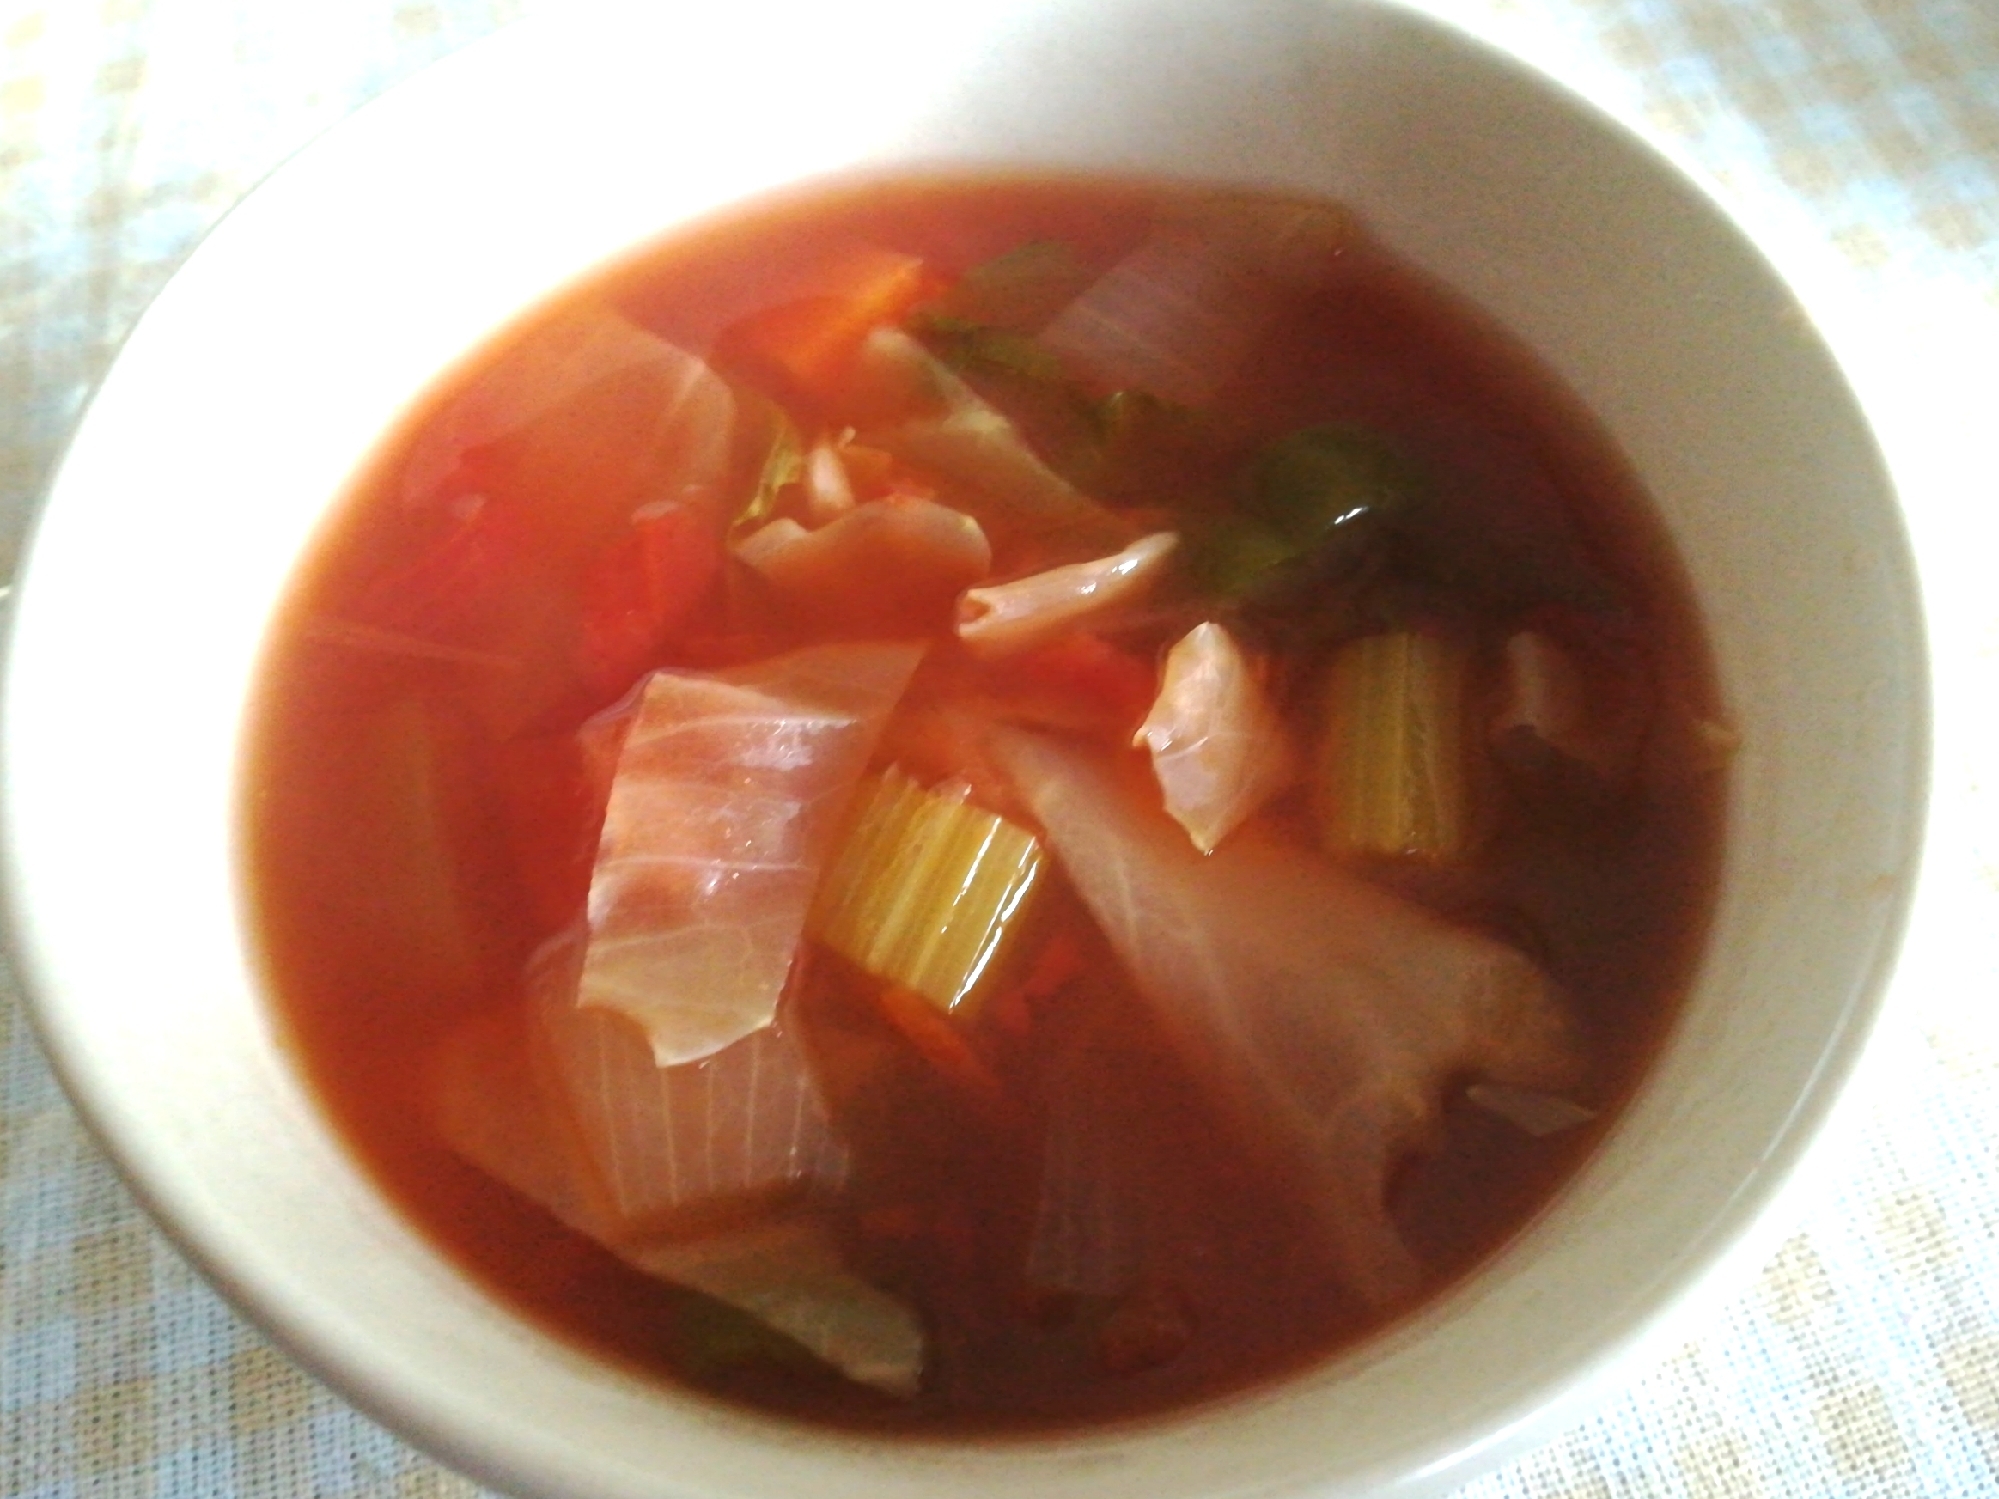 作ってみた☆トマト仕立てのデトックス野菜スープ